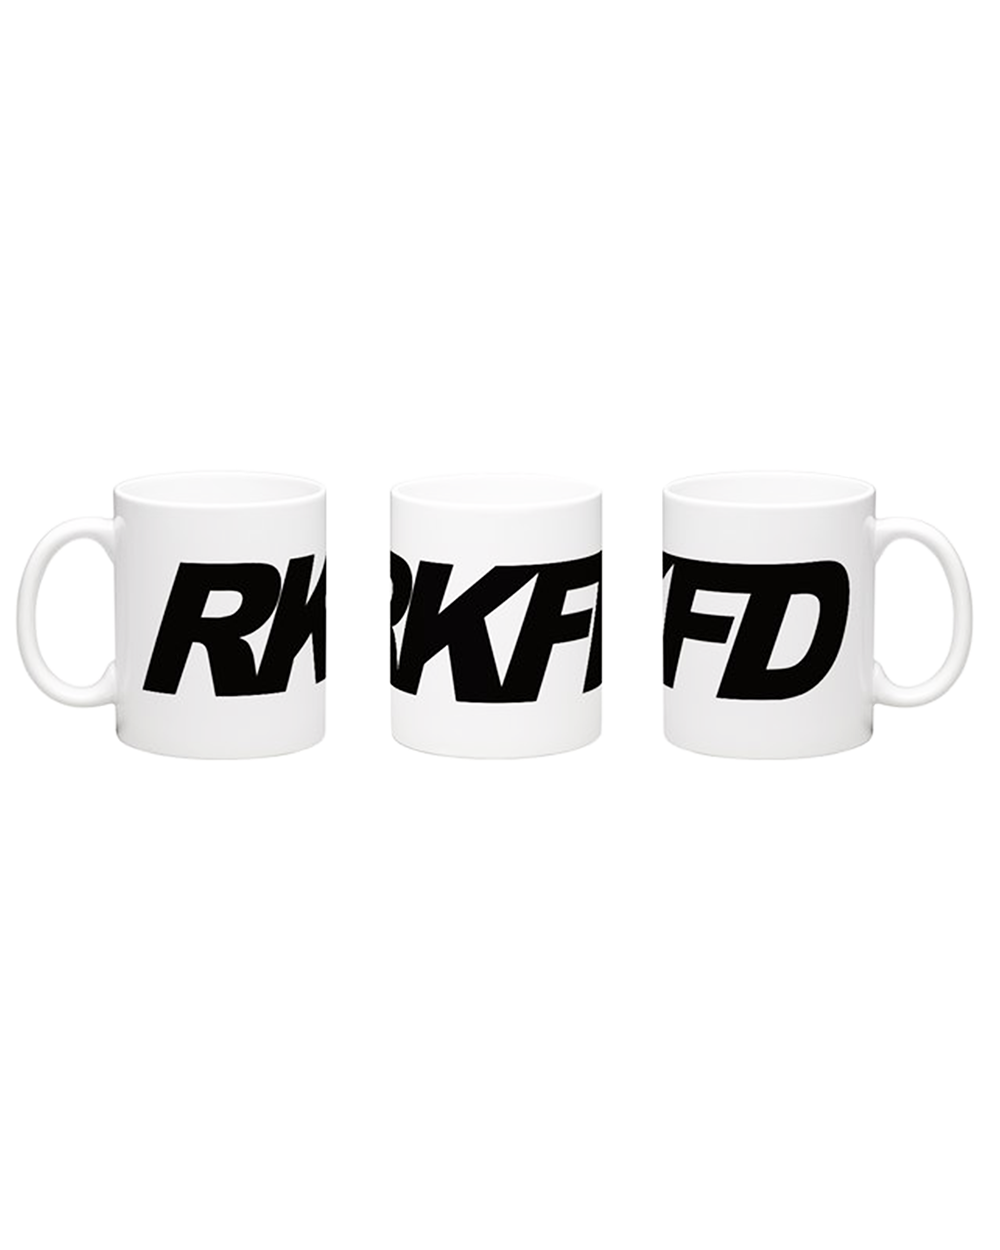 RKFD Coffee Mug